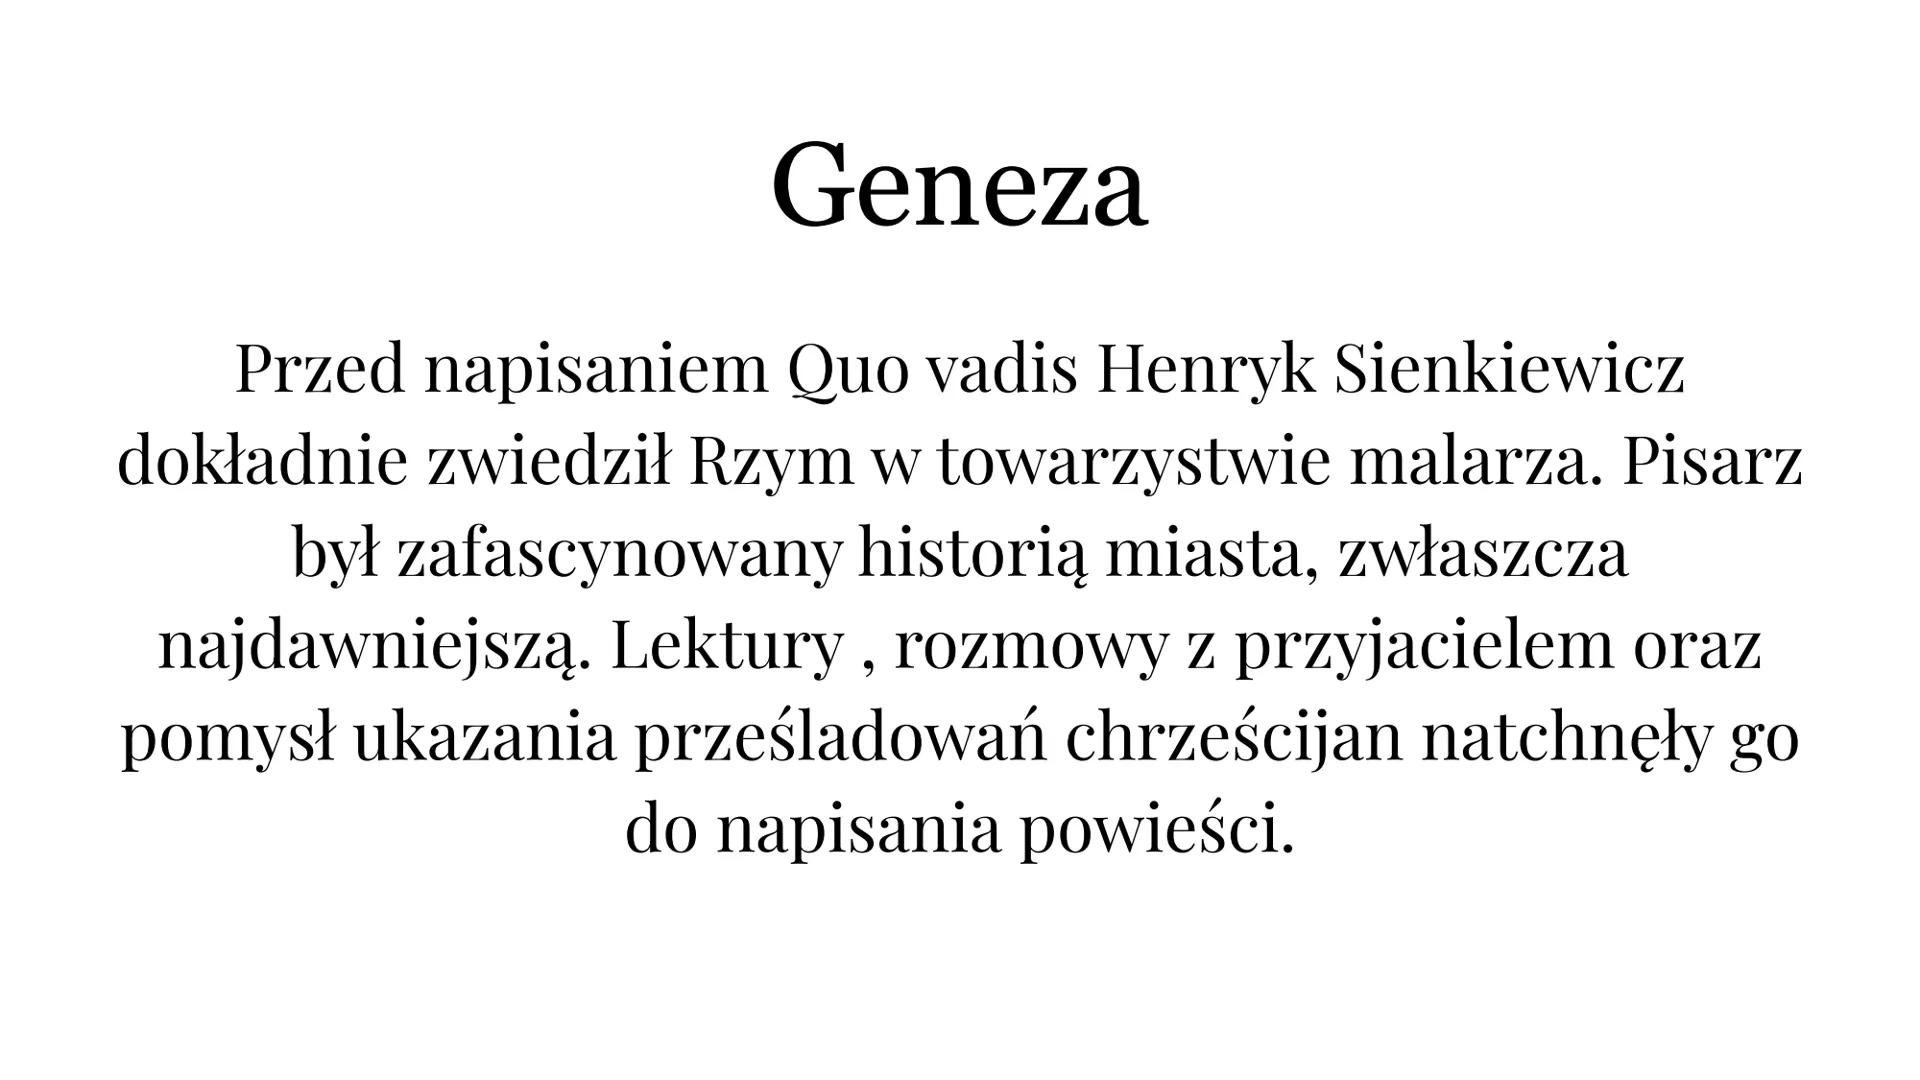 Quo vadis
Henryk Sienkiewicz
SHAF
00000
MAGRIPPALFCOSTE
YL Geneza
Przed napisaniem Quo vadis Henryk Sienkiewicz
dokładnie zwiedził Rzym w to